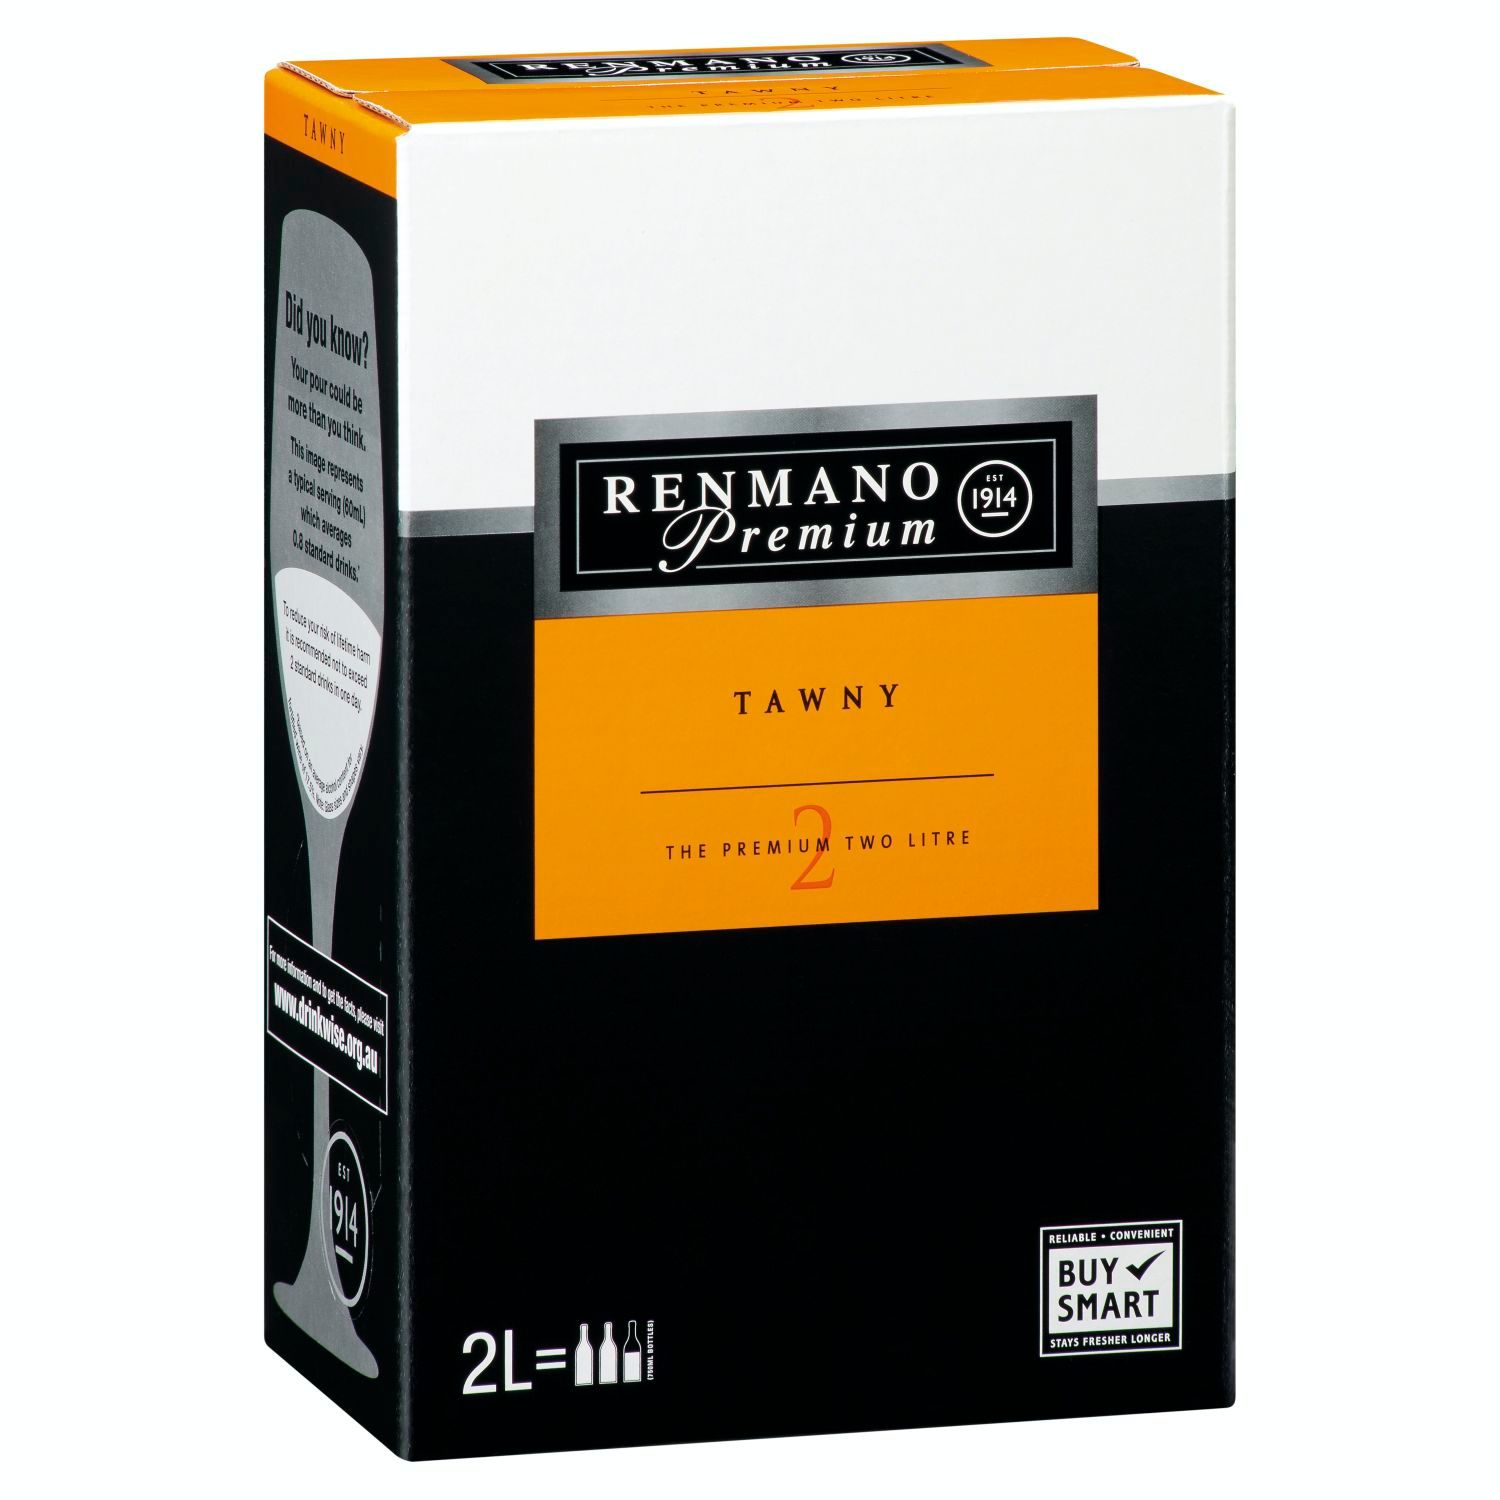 Renmano Premium Tawny Cask 2L<br /> <br />Alcohol Volume: 16.50%<br /><br />Pack Format: Cask<br /><br />Standard Drinks: 26</br /><br />Pack Type: Cask<br /><br />Country of Origin: Australia<br /><br />Region: Multi-Regional Blend<br /><br />Vintage: Non Vintage<br />